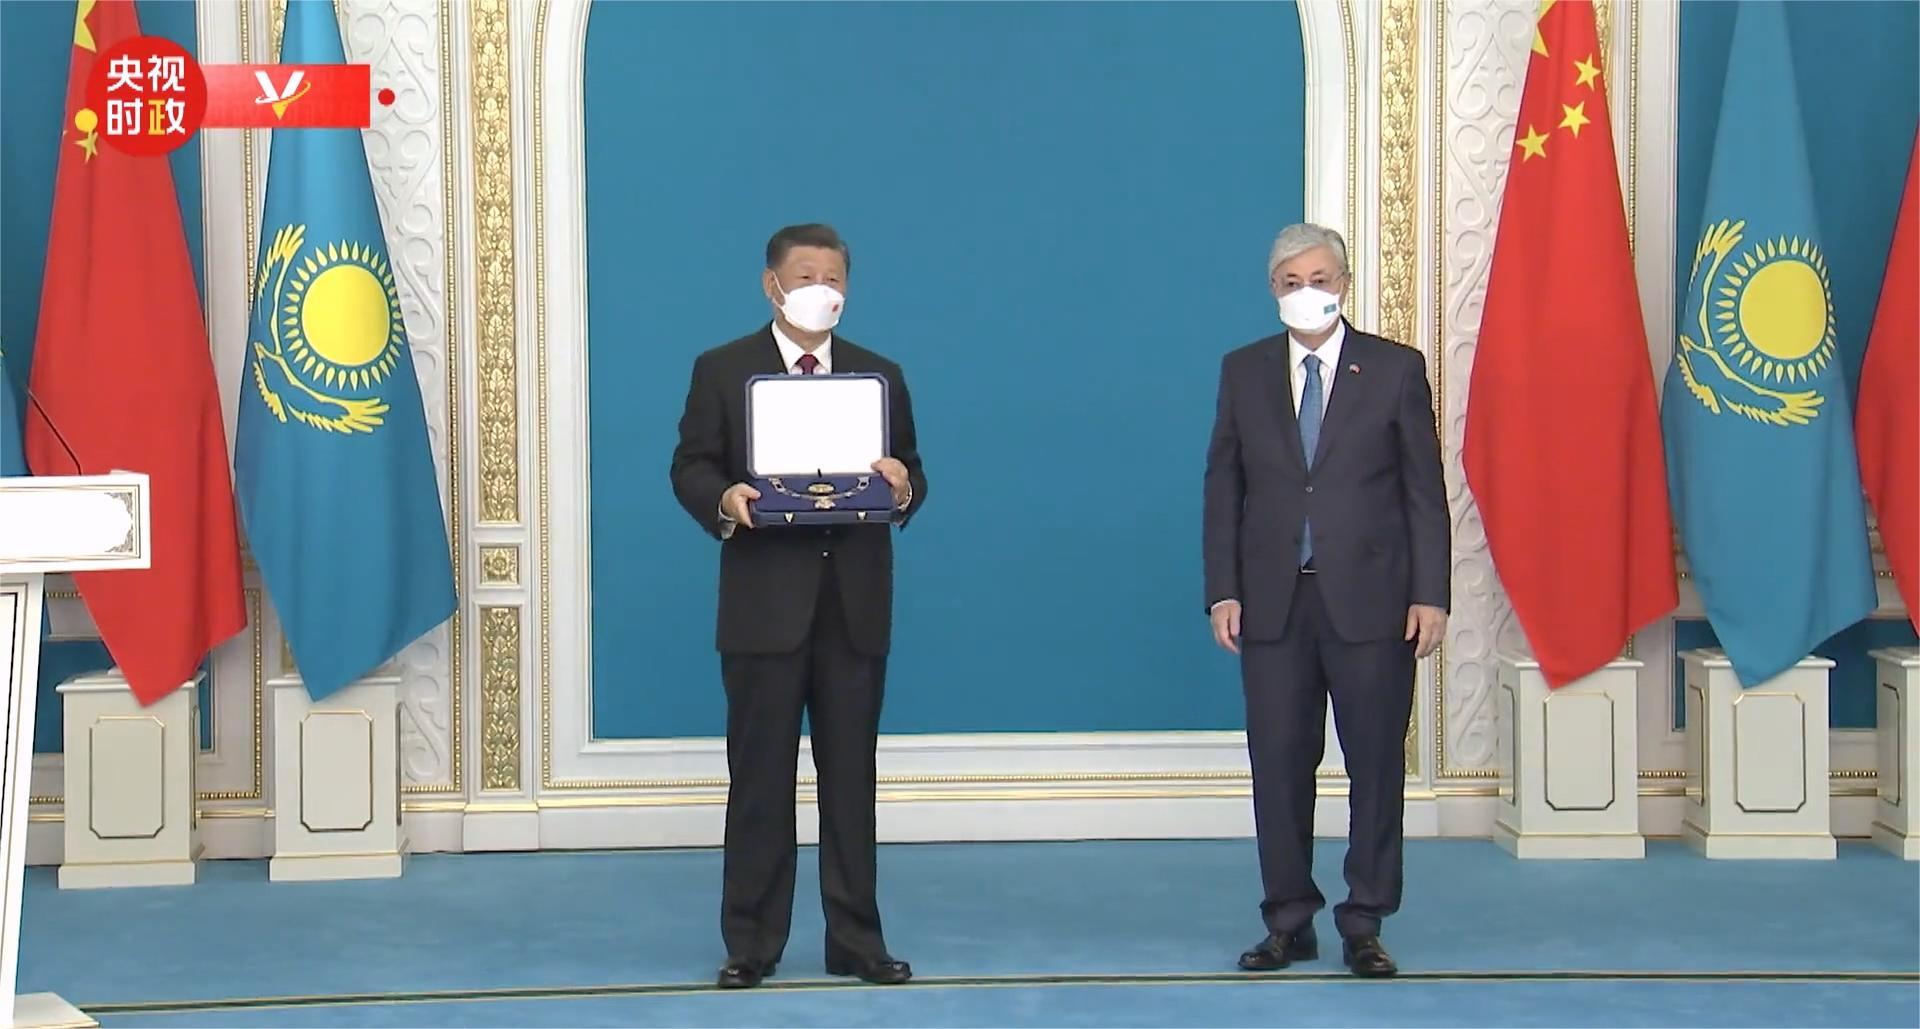 习近平出席仪式 接受哈萨克斯坦总统授予“金鹰勋章”